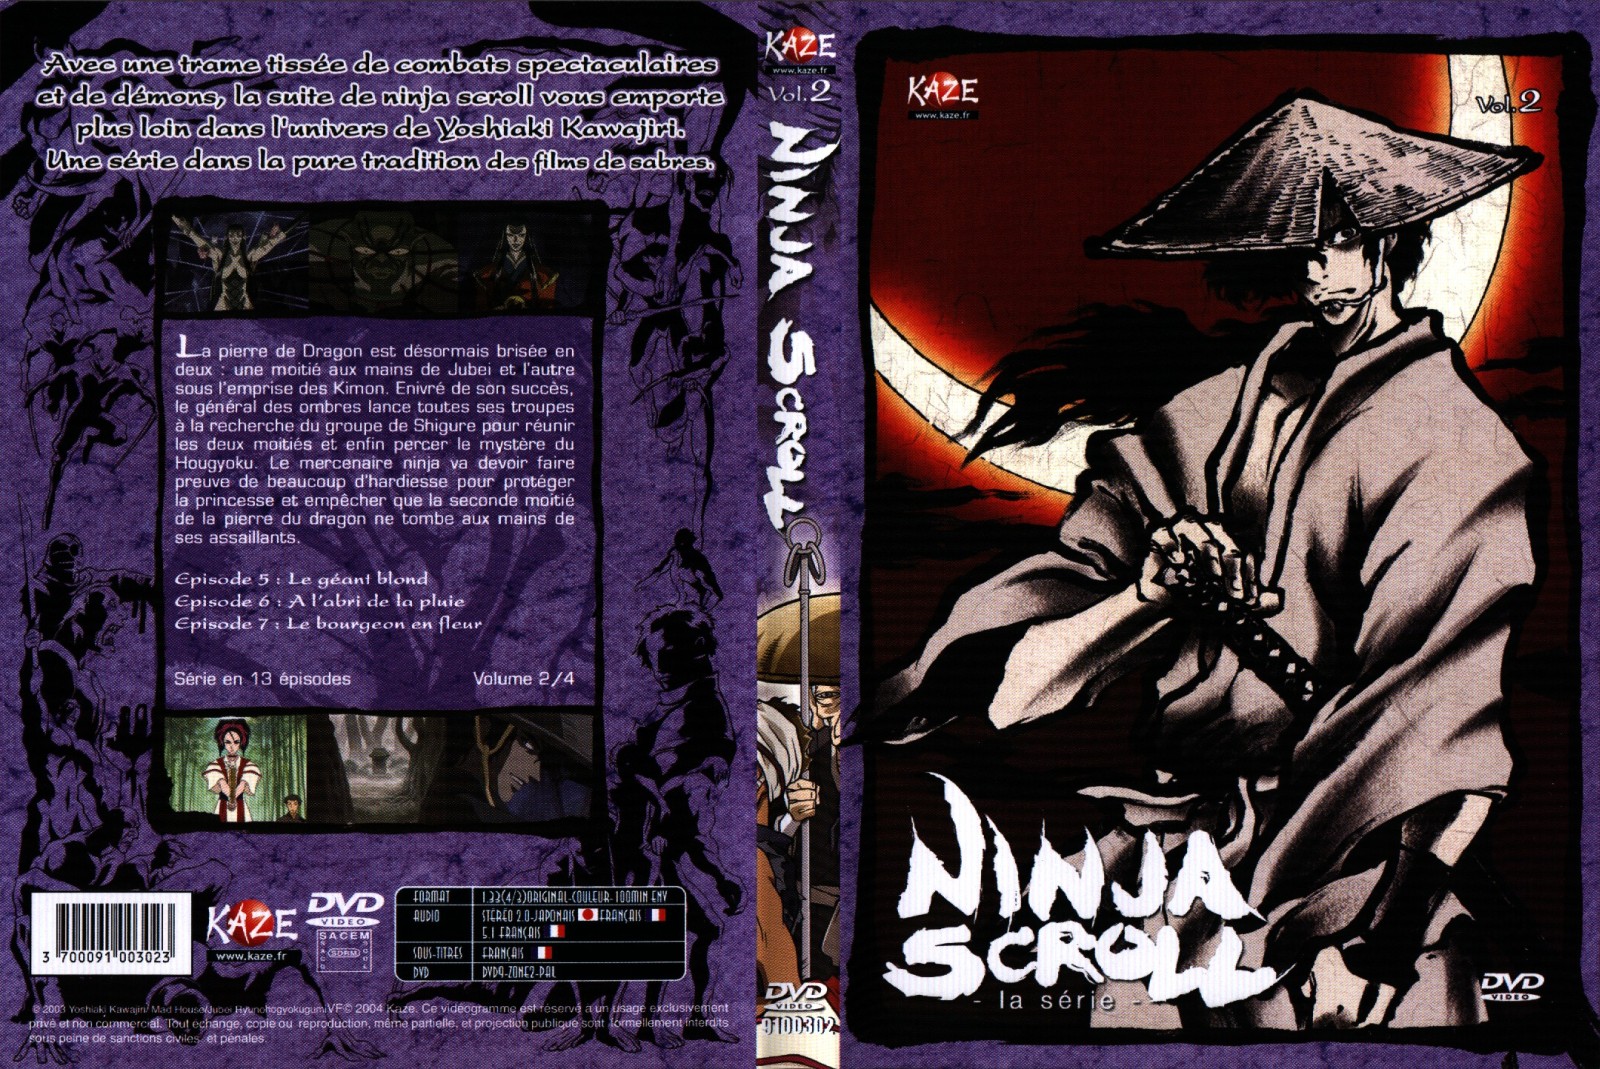 Jaquette DVD Ninja scroll la srie vol 2